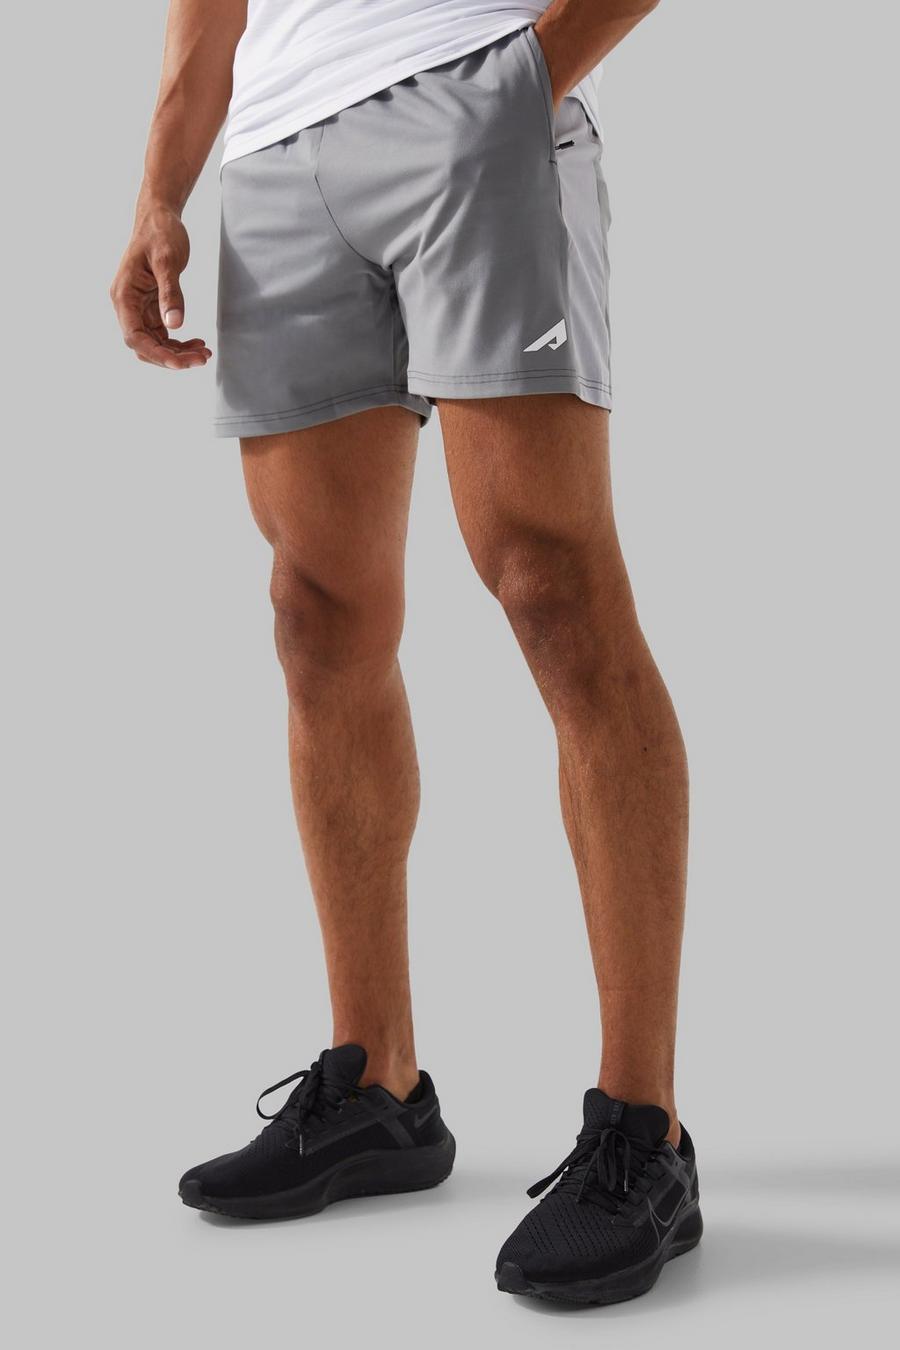 Pantalón corto Active resistente con panel y logo, Grey